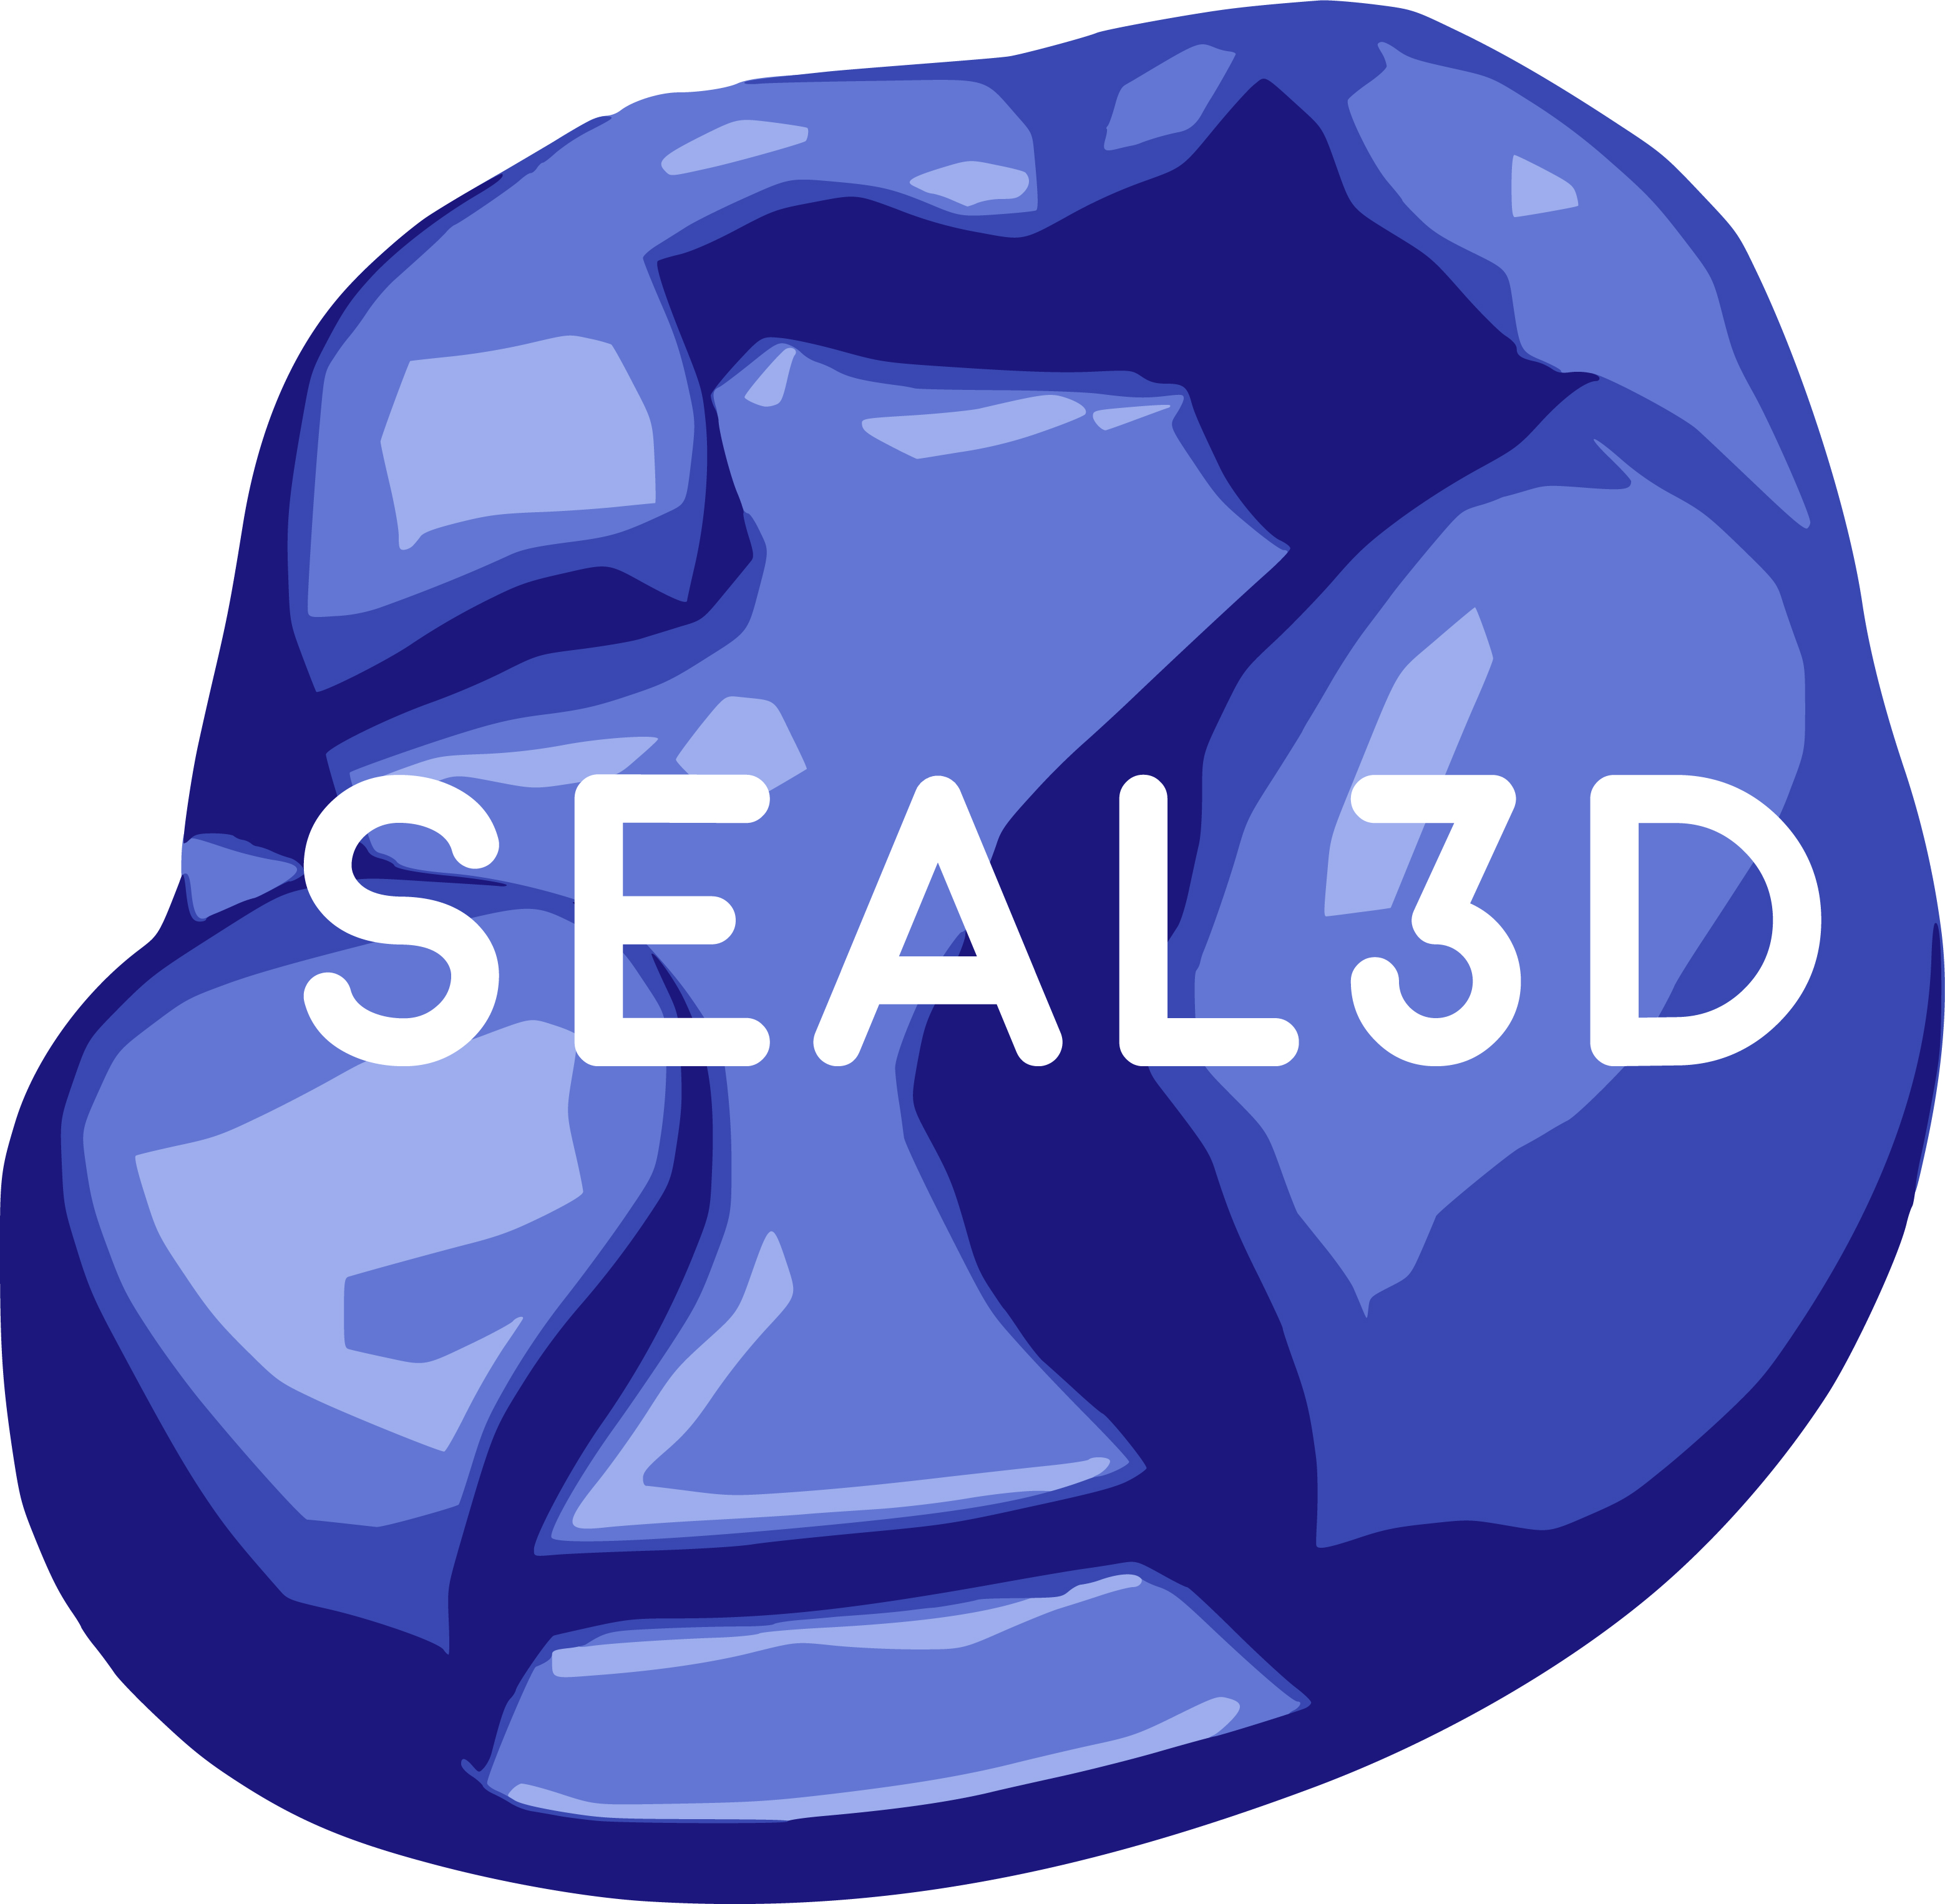 Seal3D